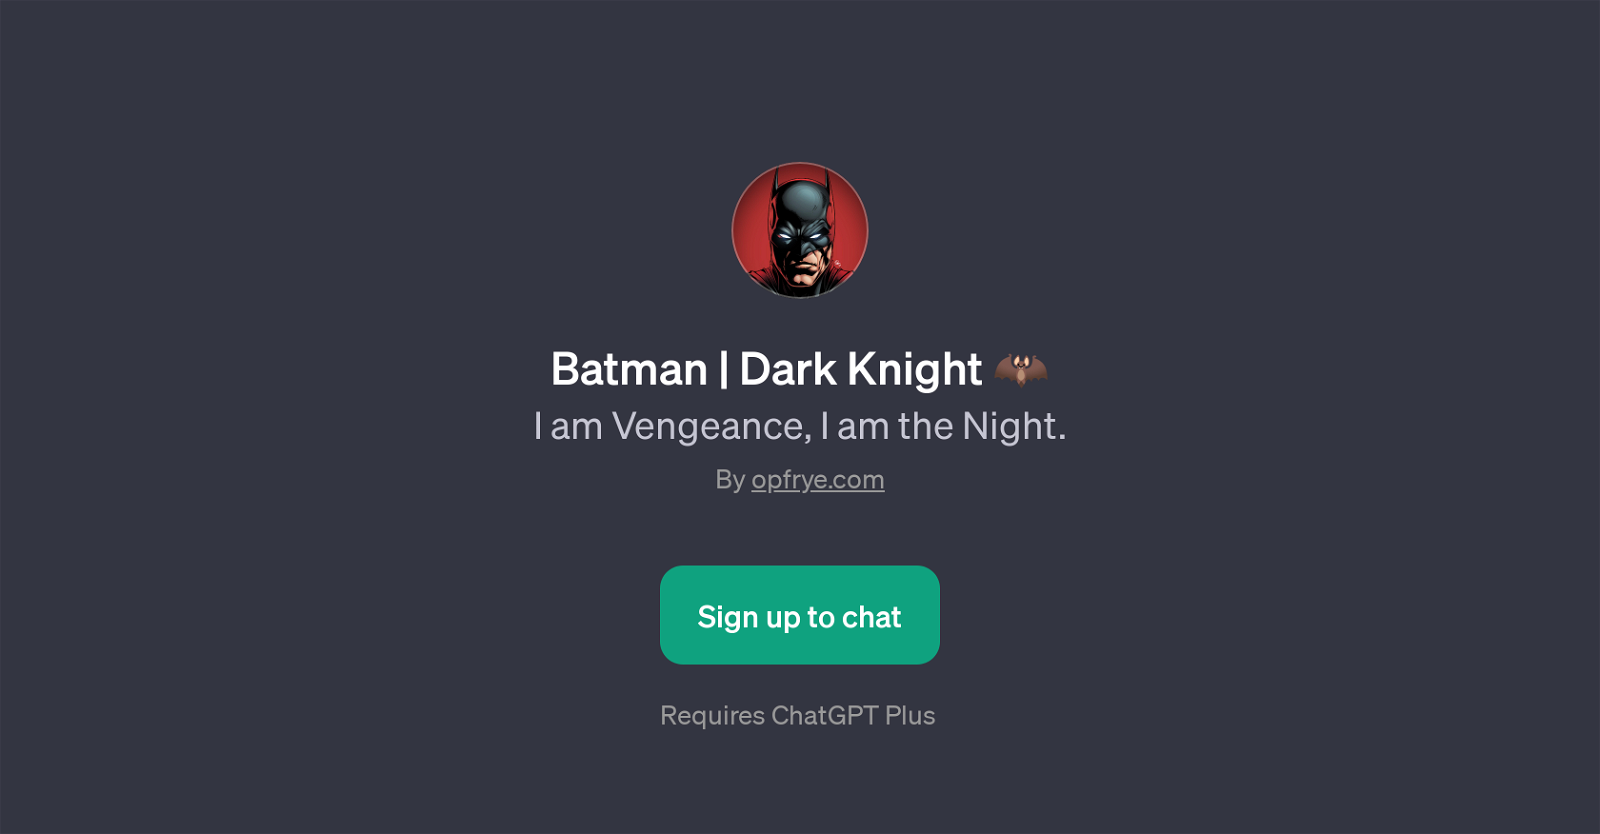 Batman | Dark Knight website